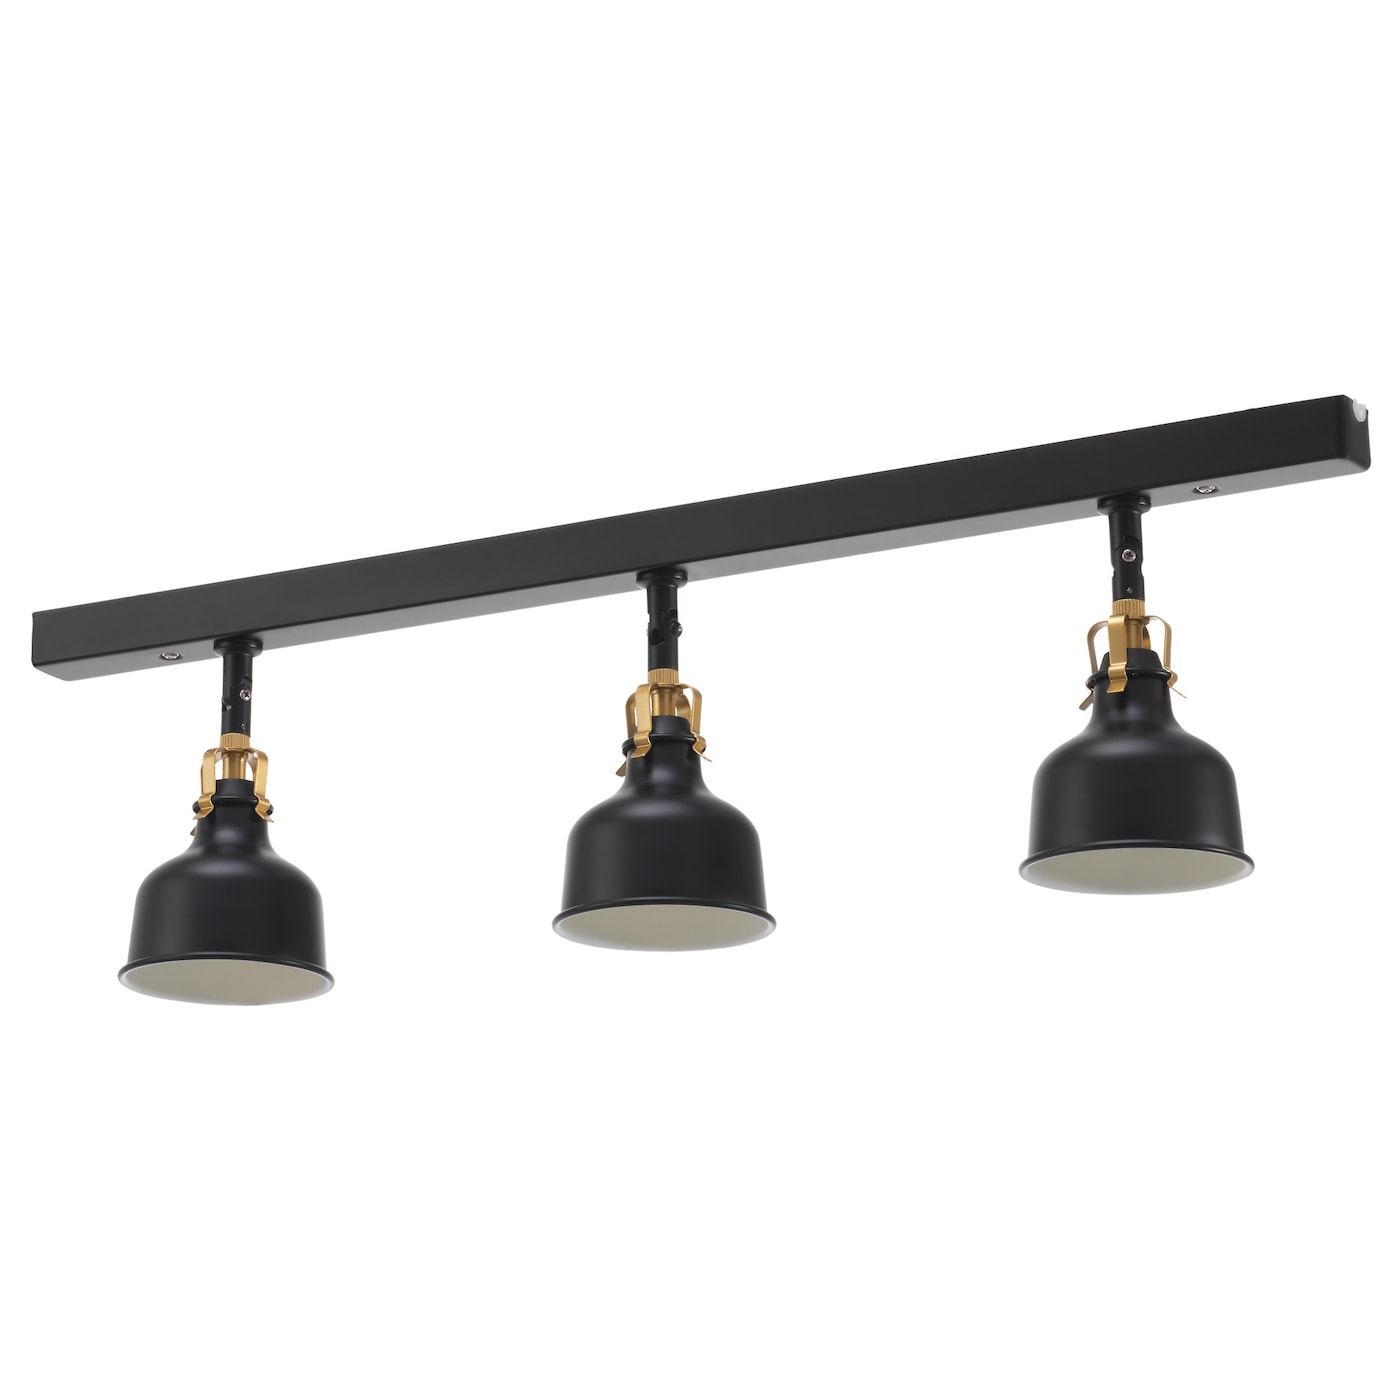 Светильники на светодиодах - RANARP  IKEA/РАНАРП ИКЕА, 74 см, черный